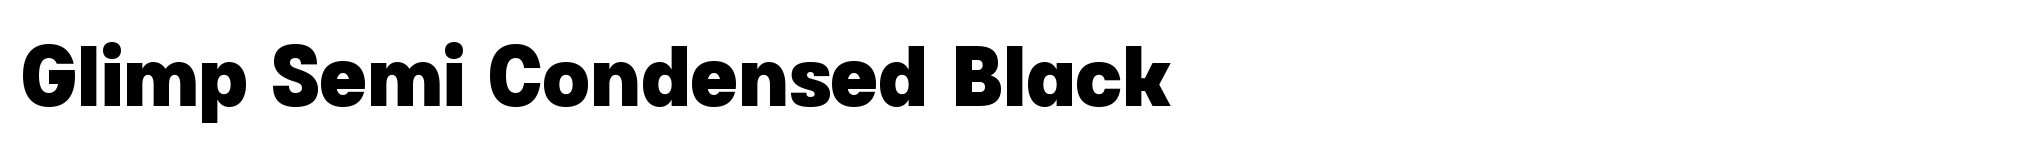 Glimp Semi Condensed Black image